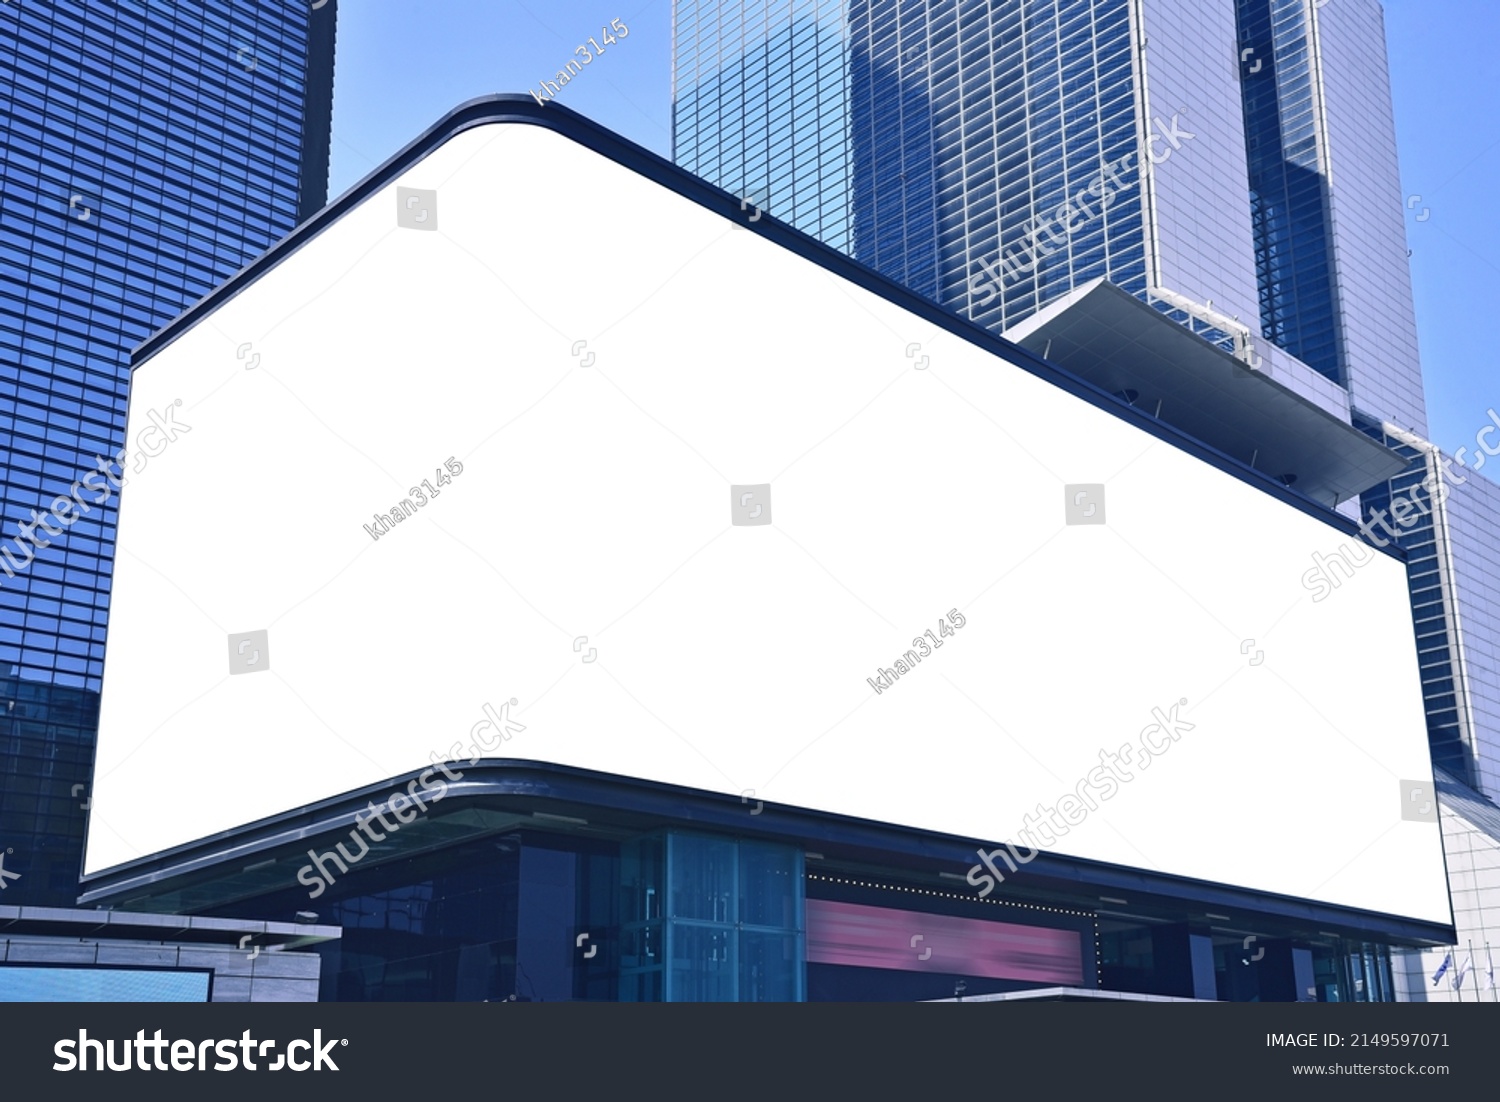 Outdoor billboard advertisement mock-up background of buildings in big cities #2149597071